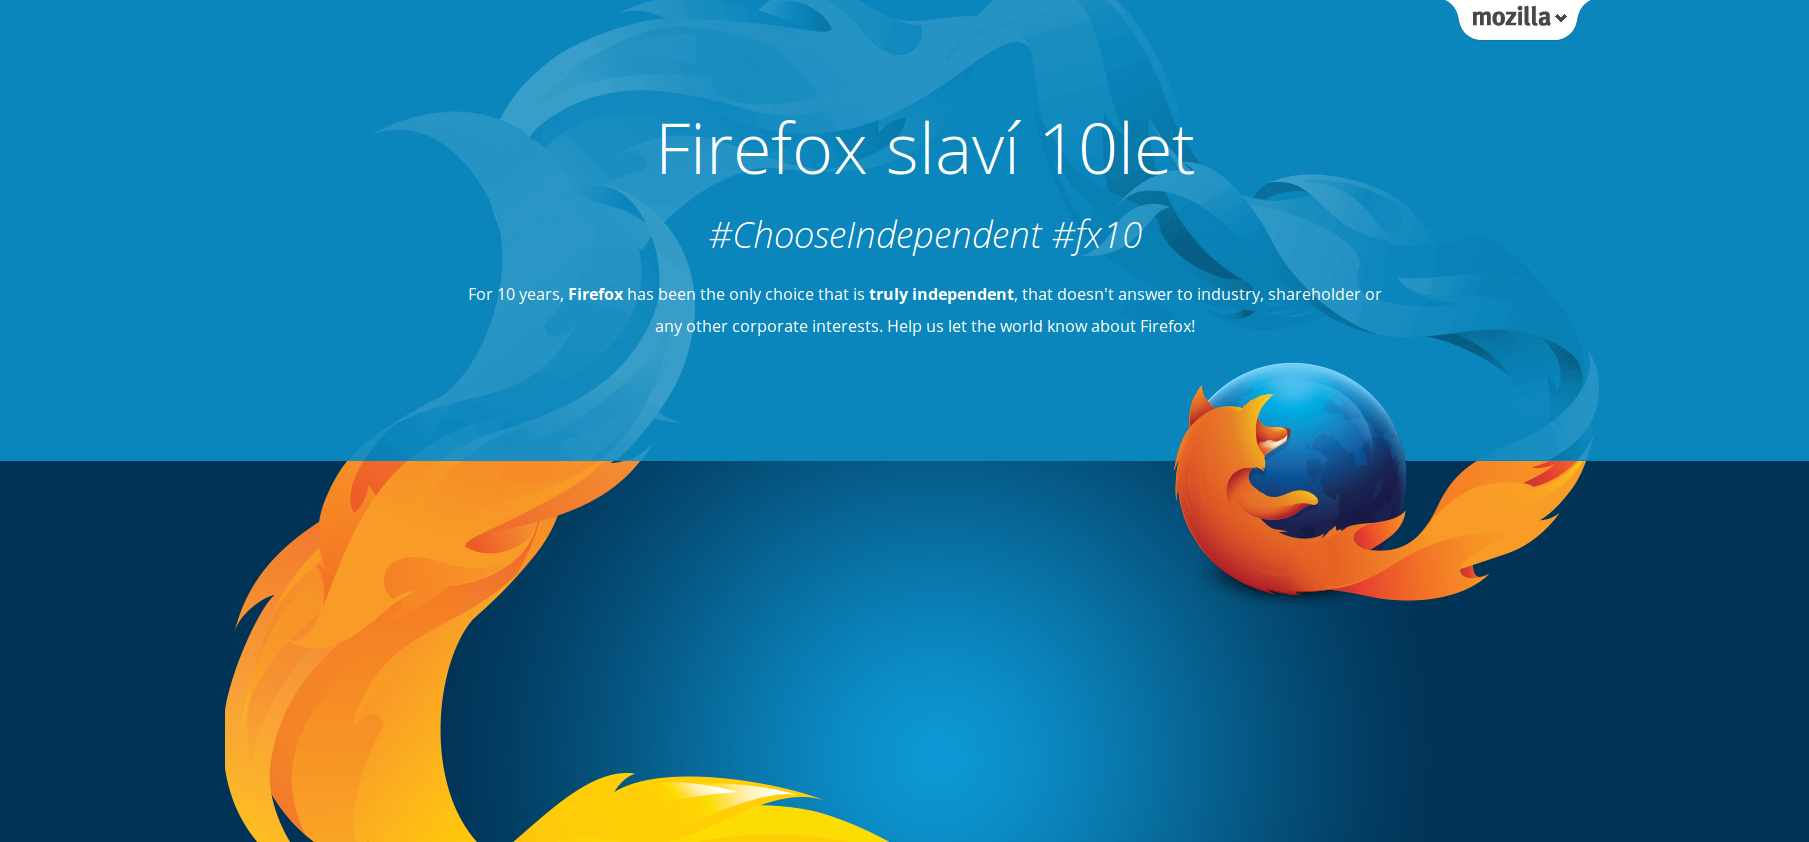 Firefox slaví 10 let